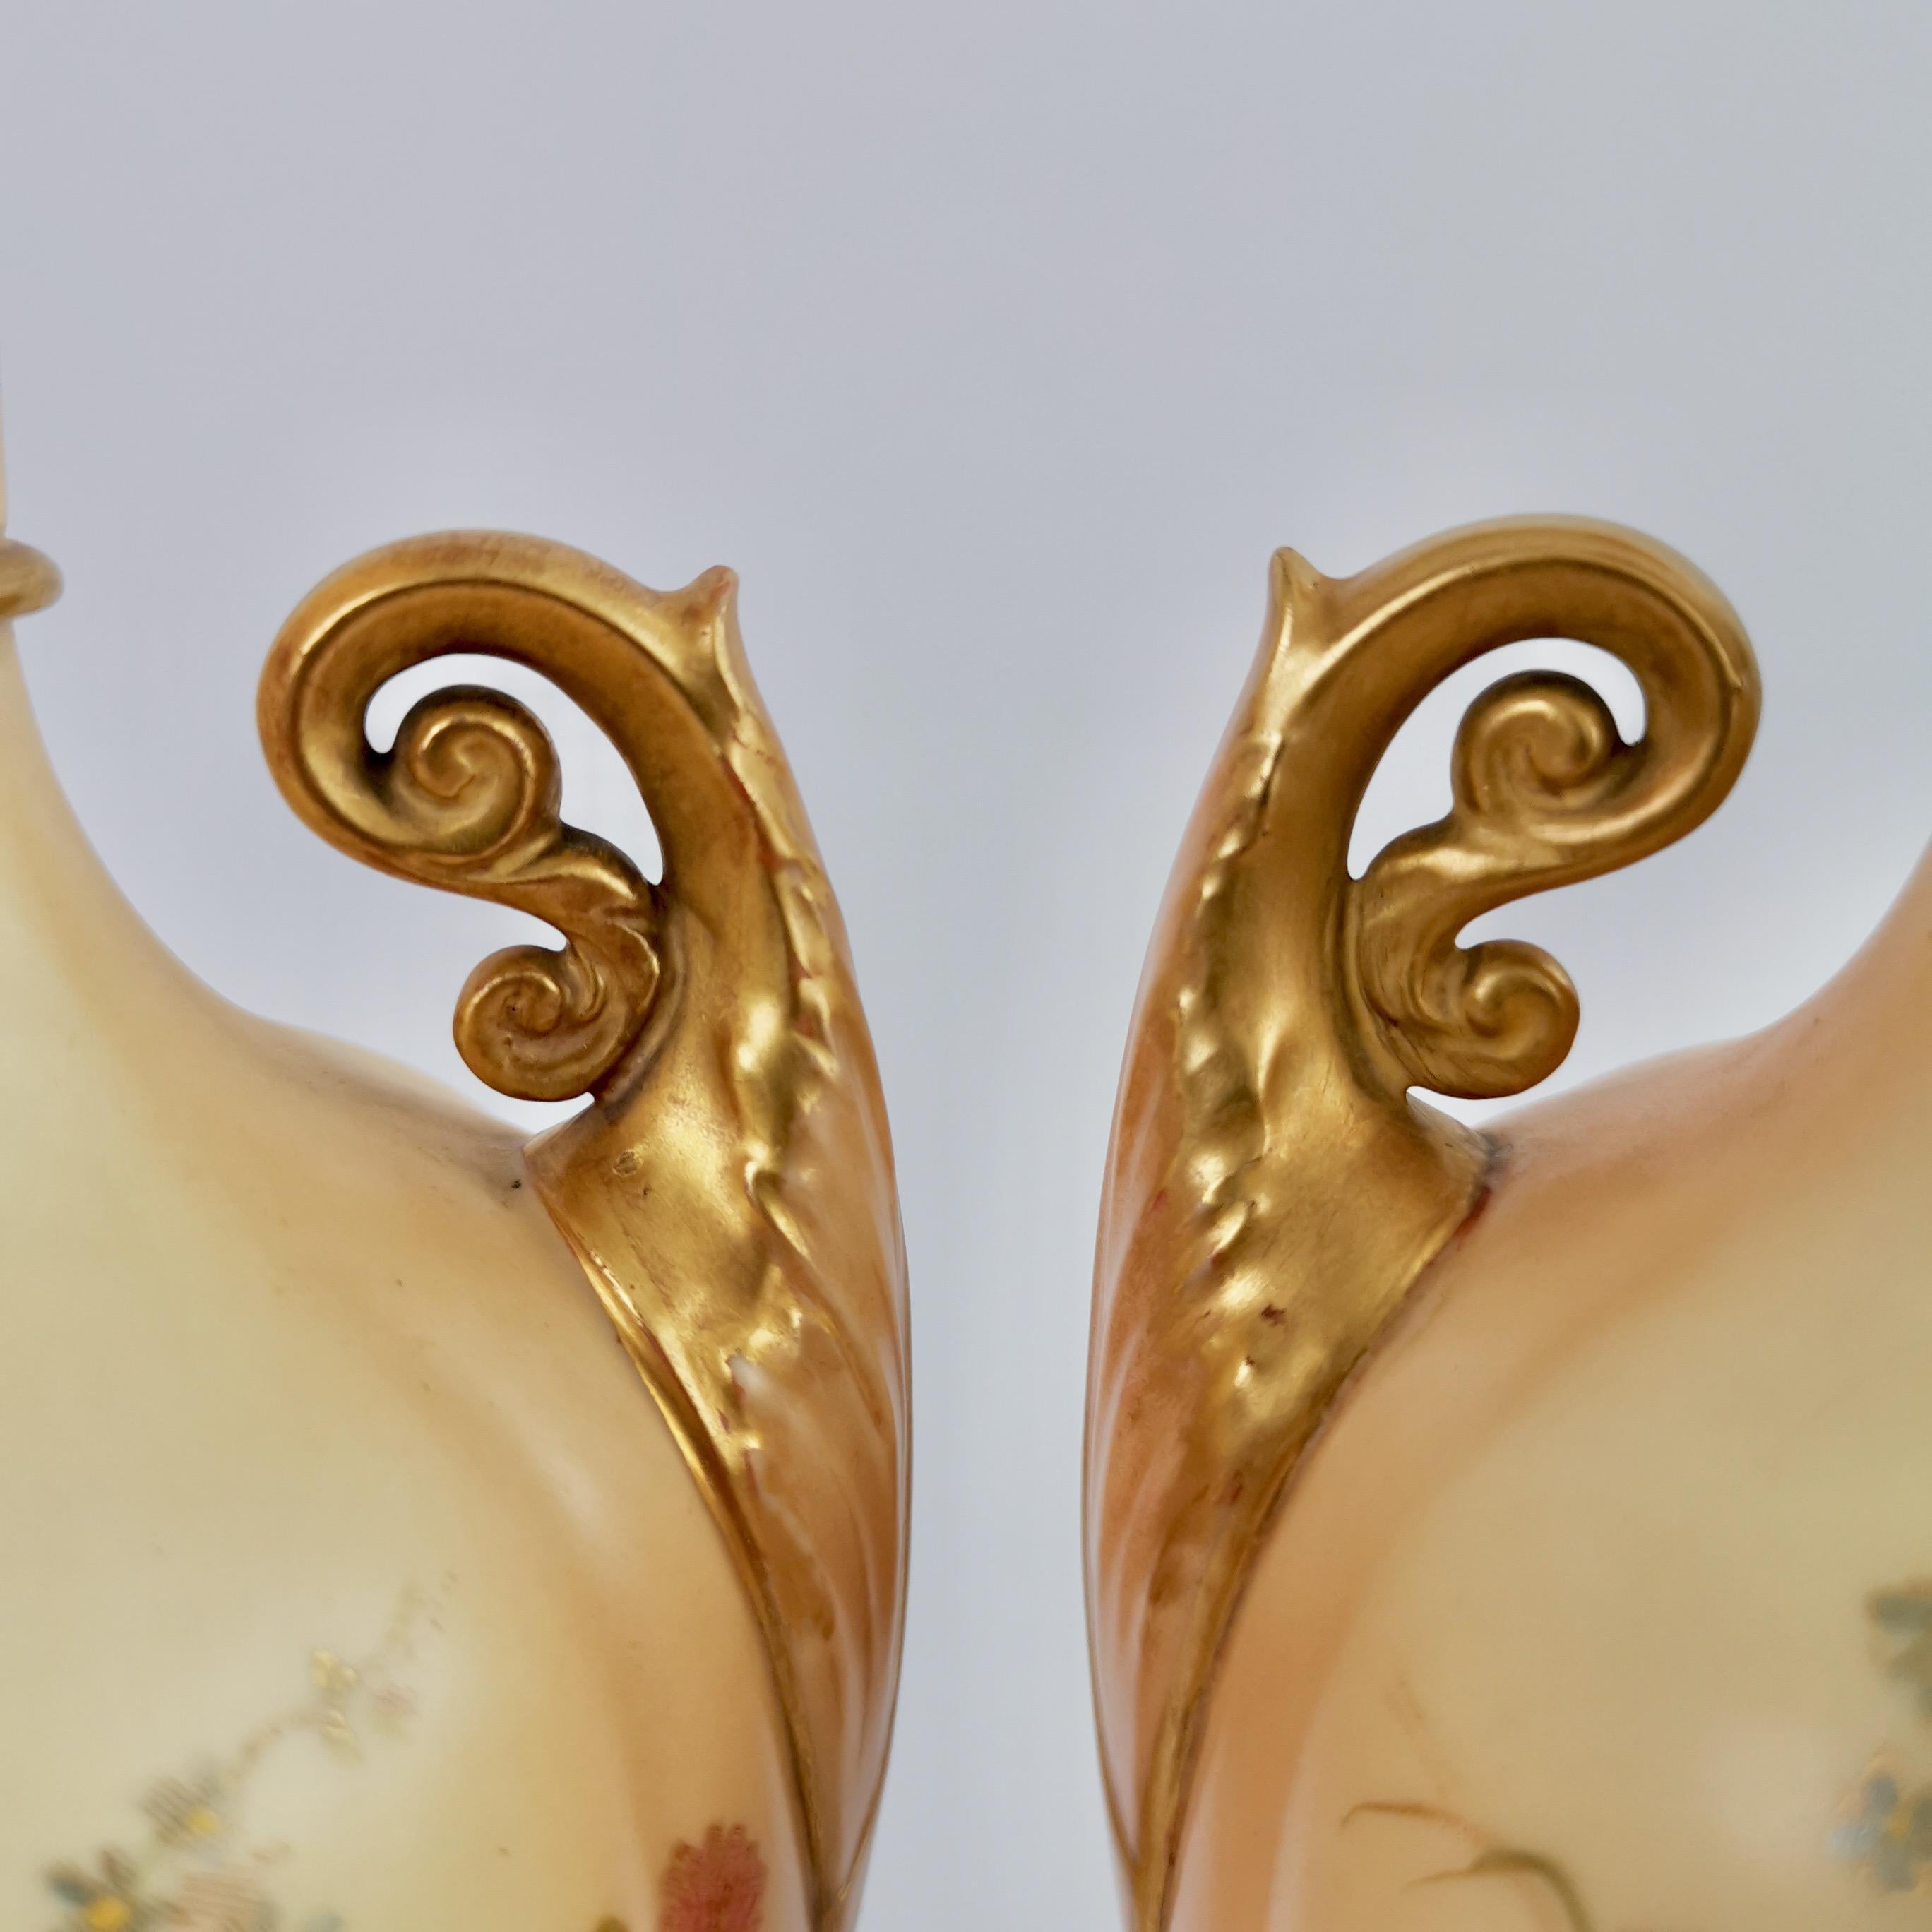 English Royal Worcester Pair of Porcelain Vases, Blush Ivory, Flowers, Edwardian, 1907